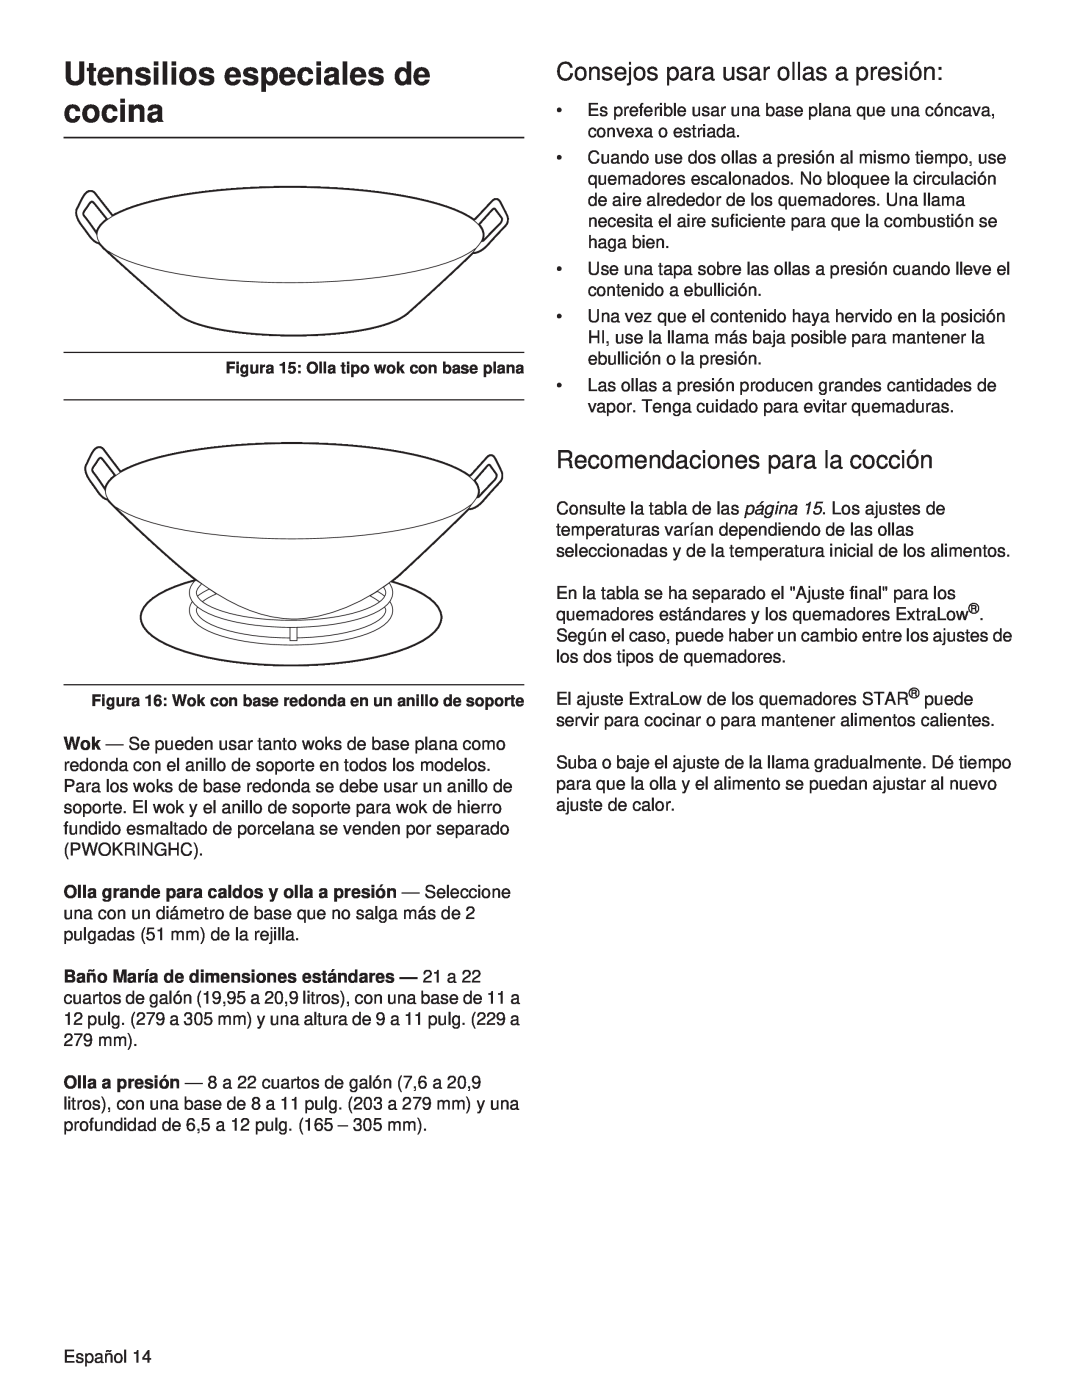 Thermador PCG30 manual Utensilios especiales de cocina, Consejos para usar ollas a presión, Recomendaciones para la cocción 